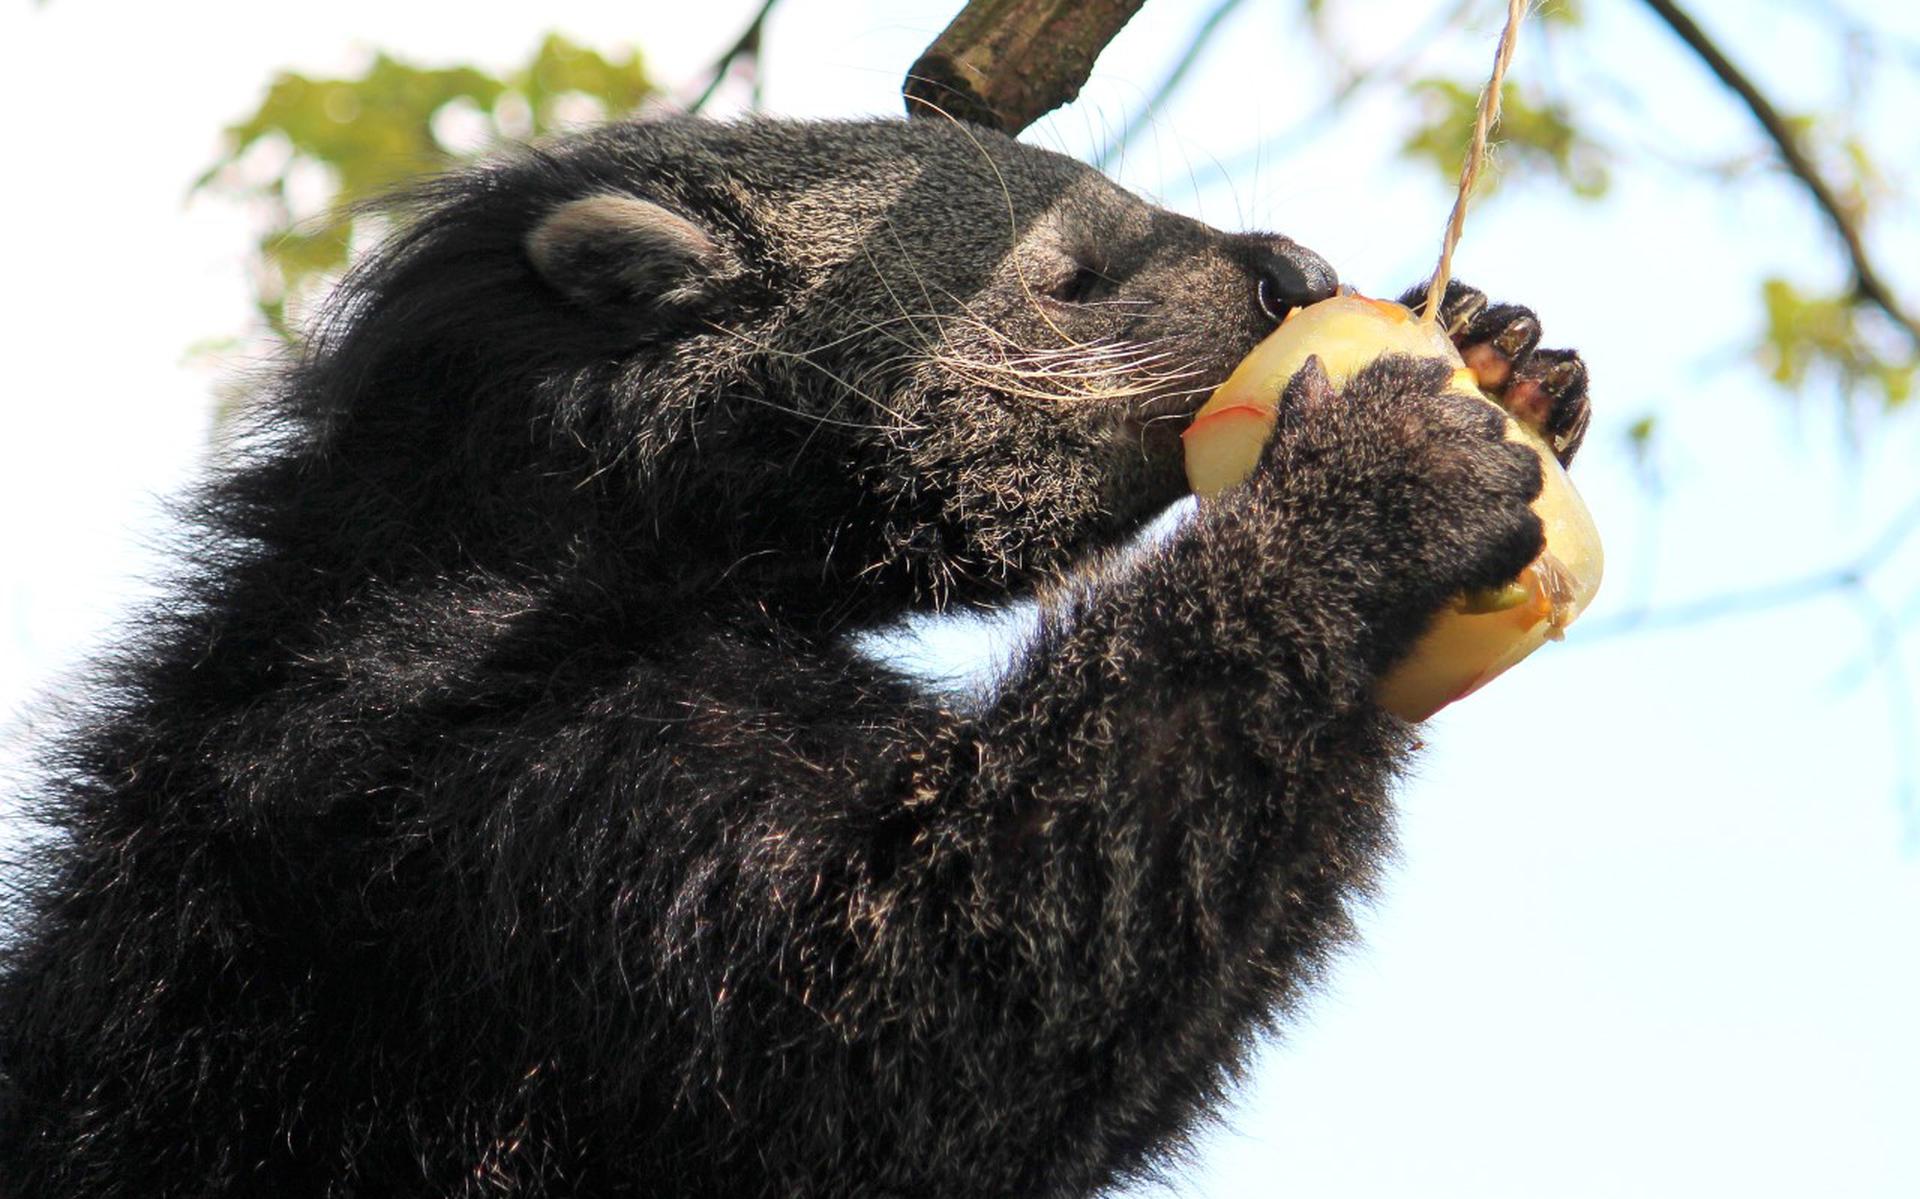 De dieren in het park, zoals de Binturong, lusten graag vers fruit. 